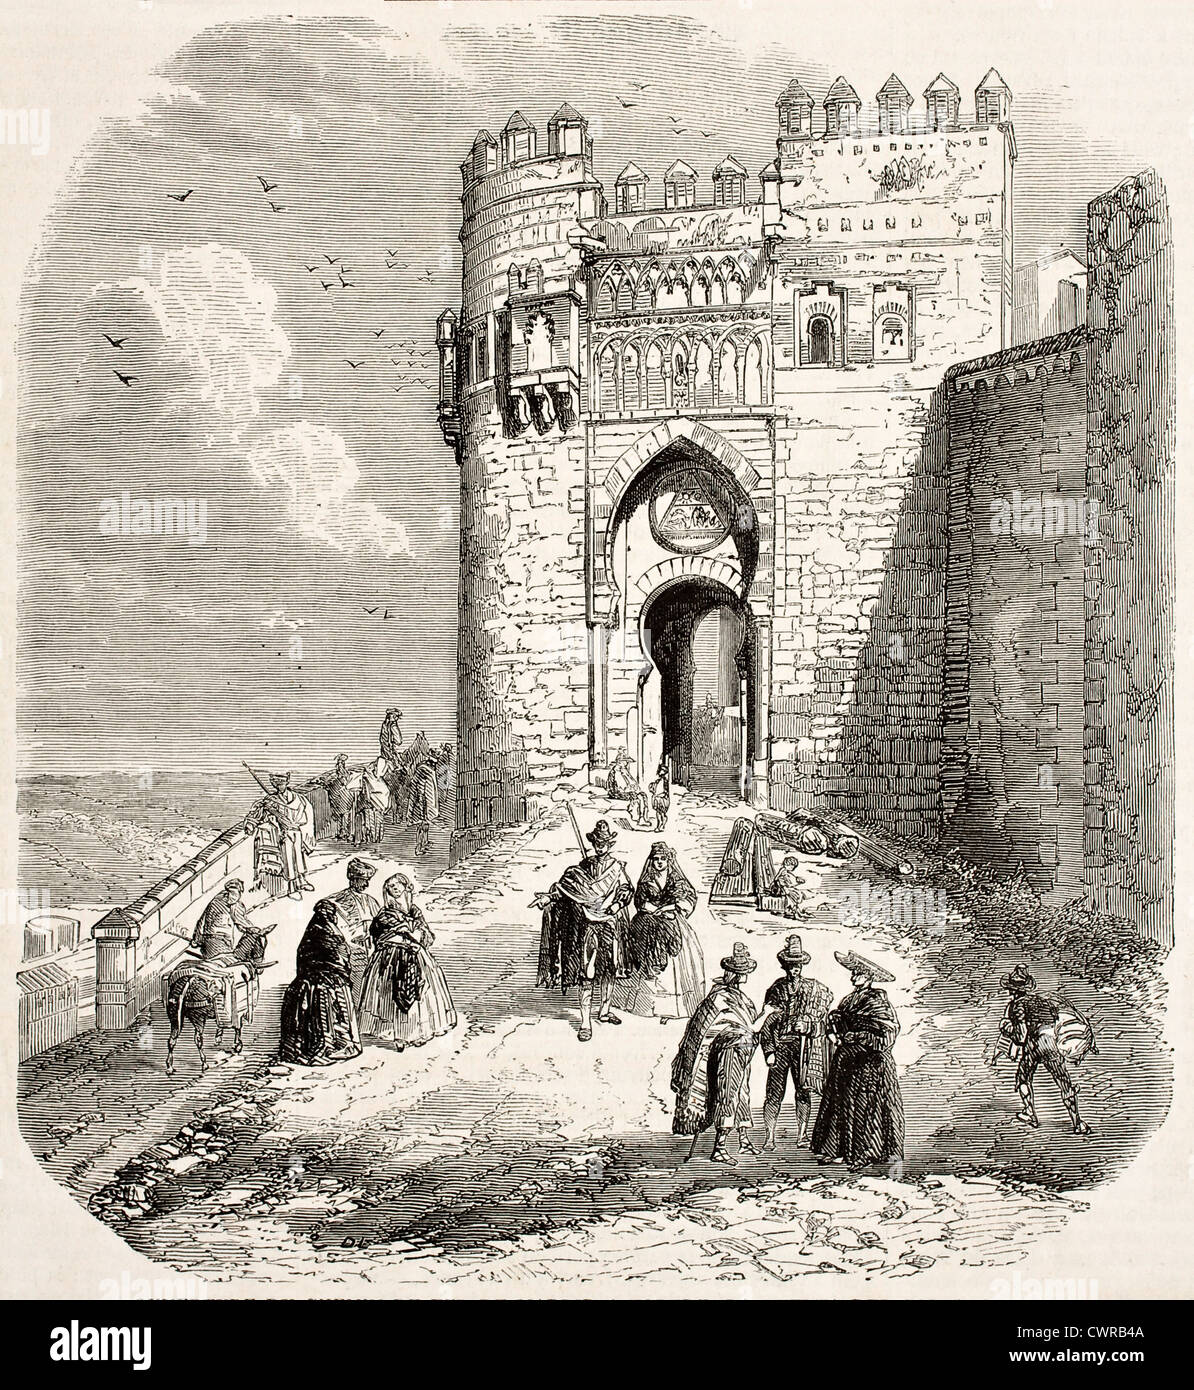 Puerta del sol vecchia illustrazione, Toledo Foto Stock